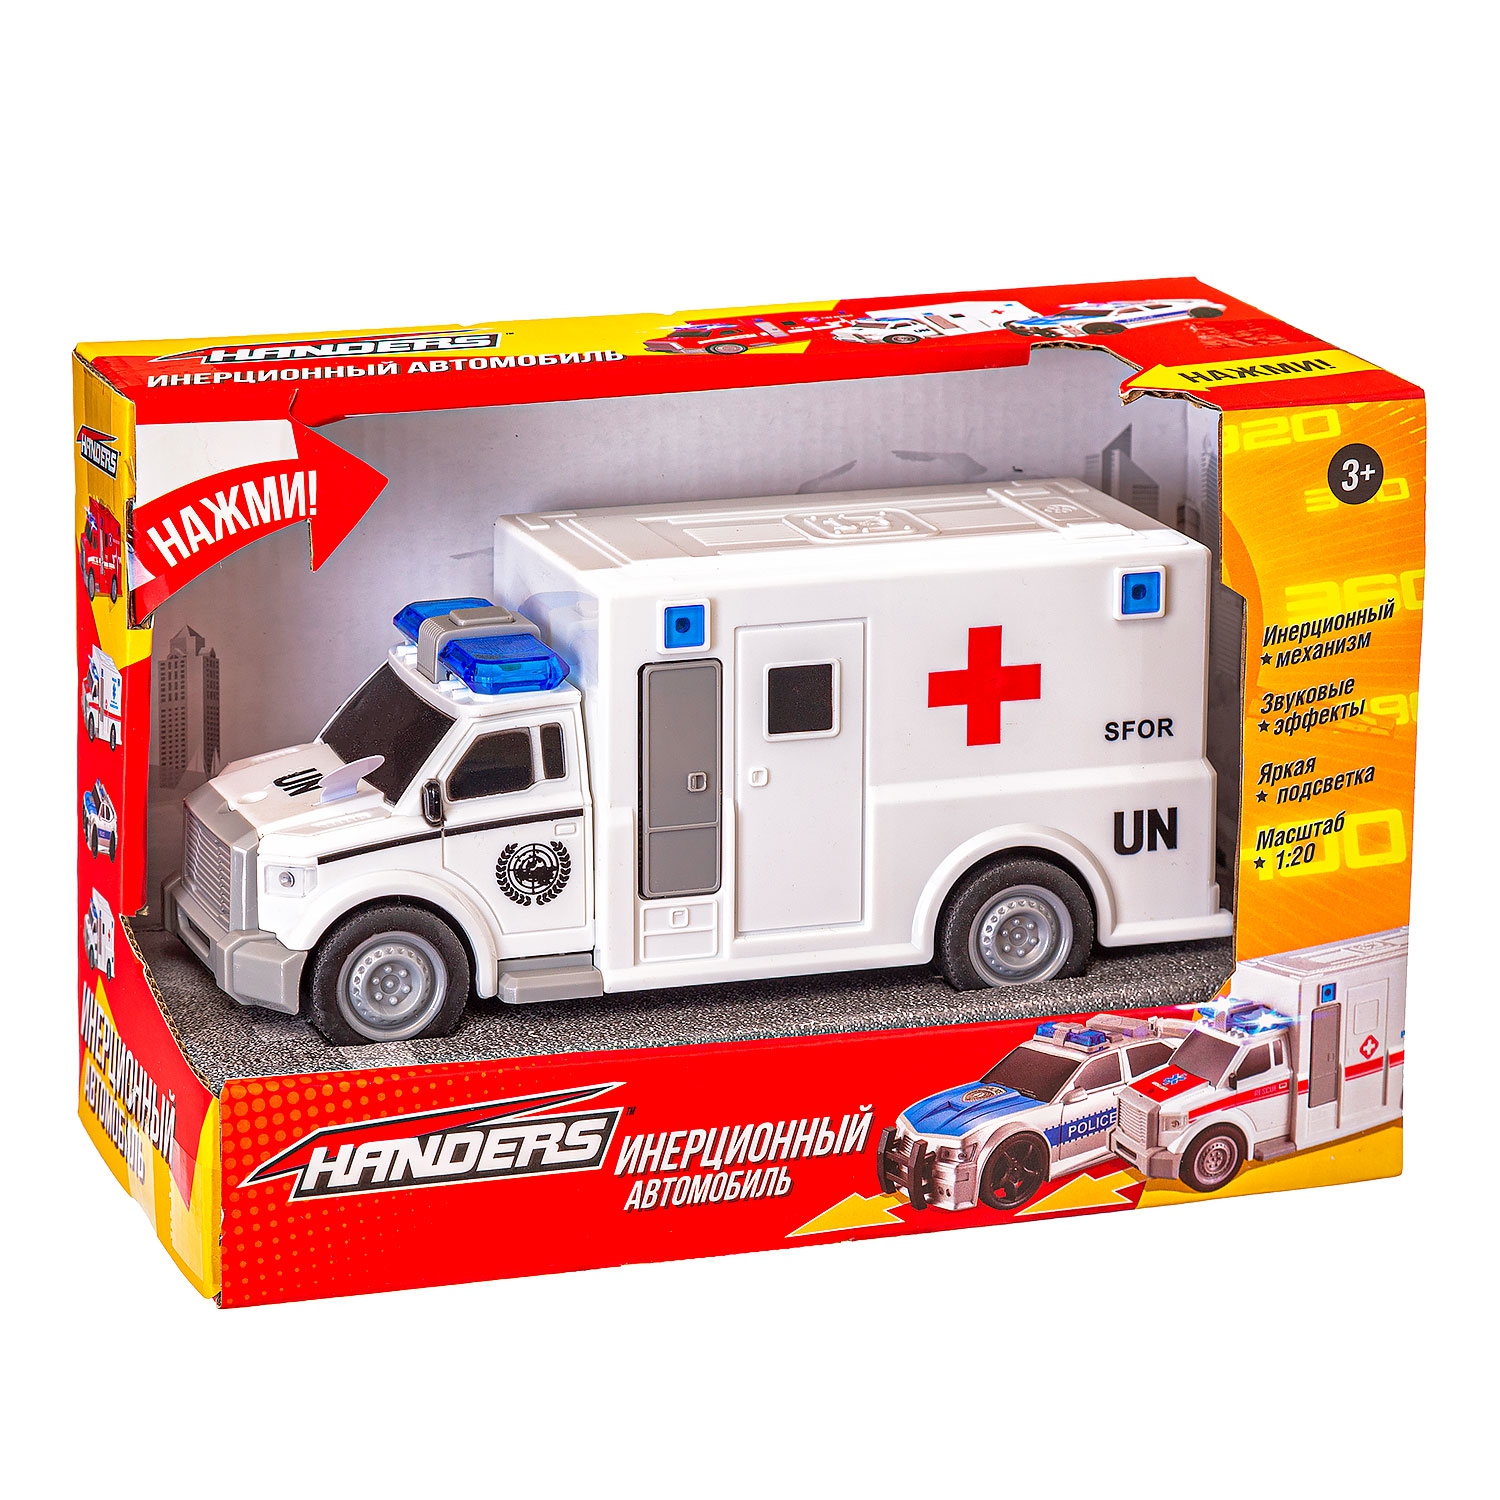 Инерционная игрушка Handers Фургон скорой помощи (19 см, 1:20, свет, звук) (Вид 1)